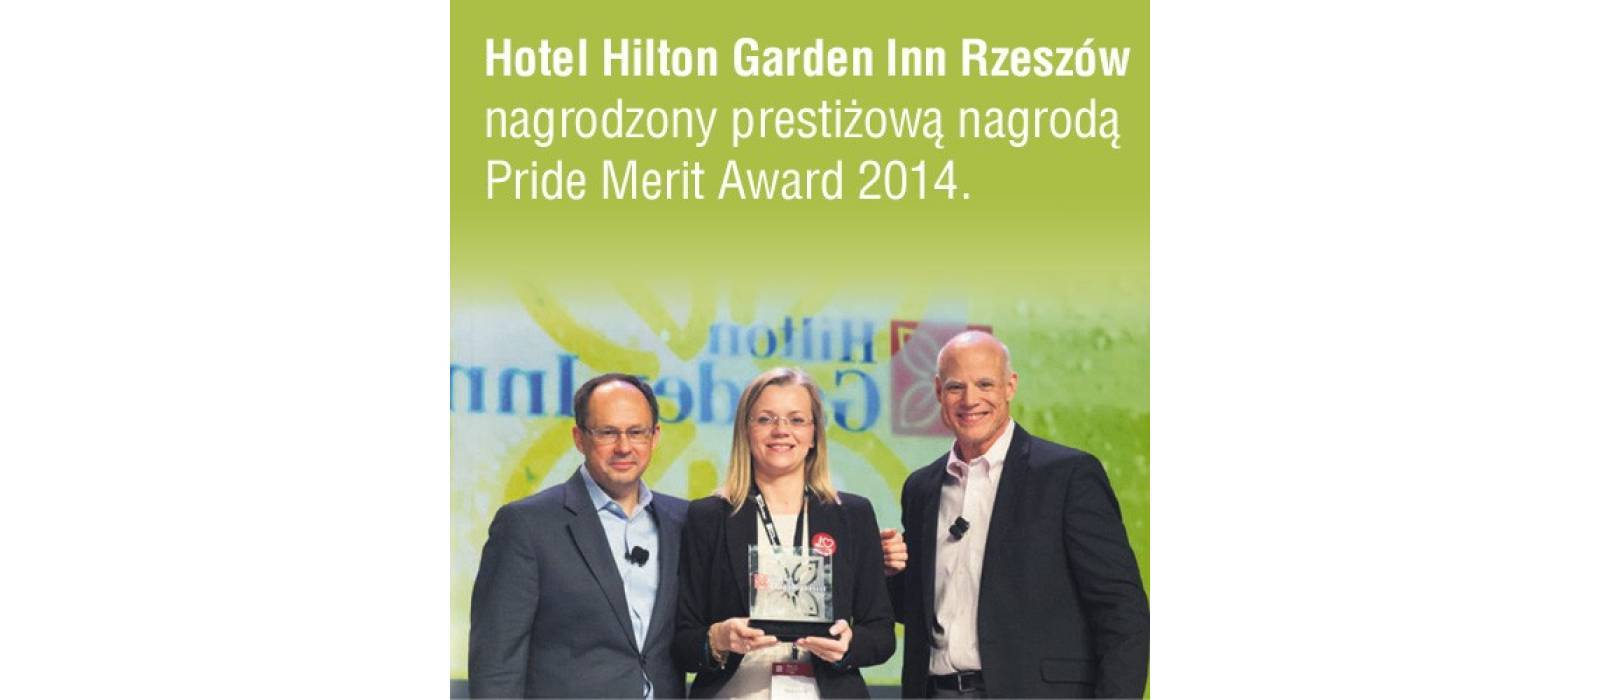 Hilton Garden Inn Rzeszów nagrodzony Pride Merit Award 2014 - 1